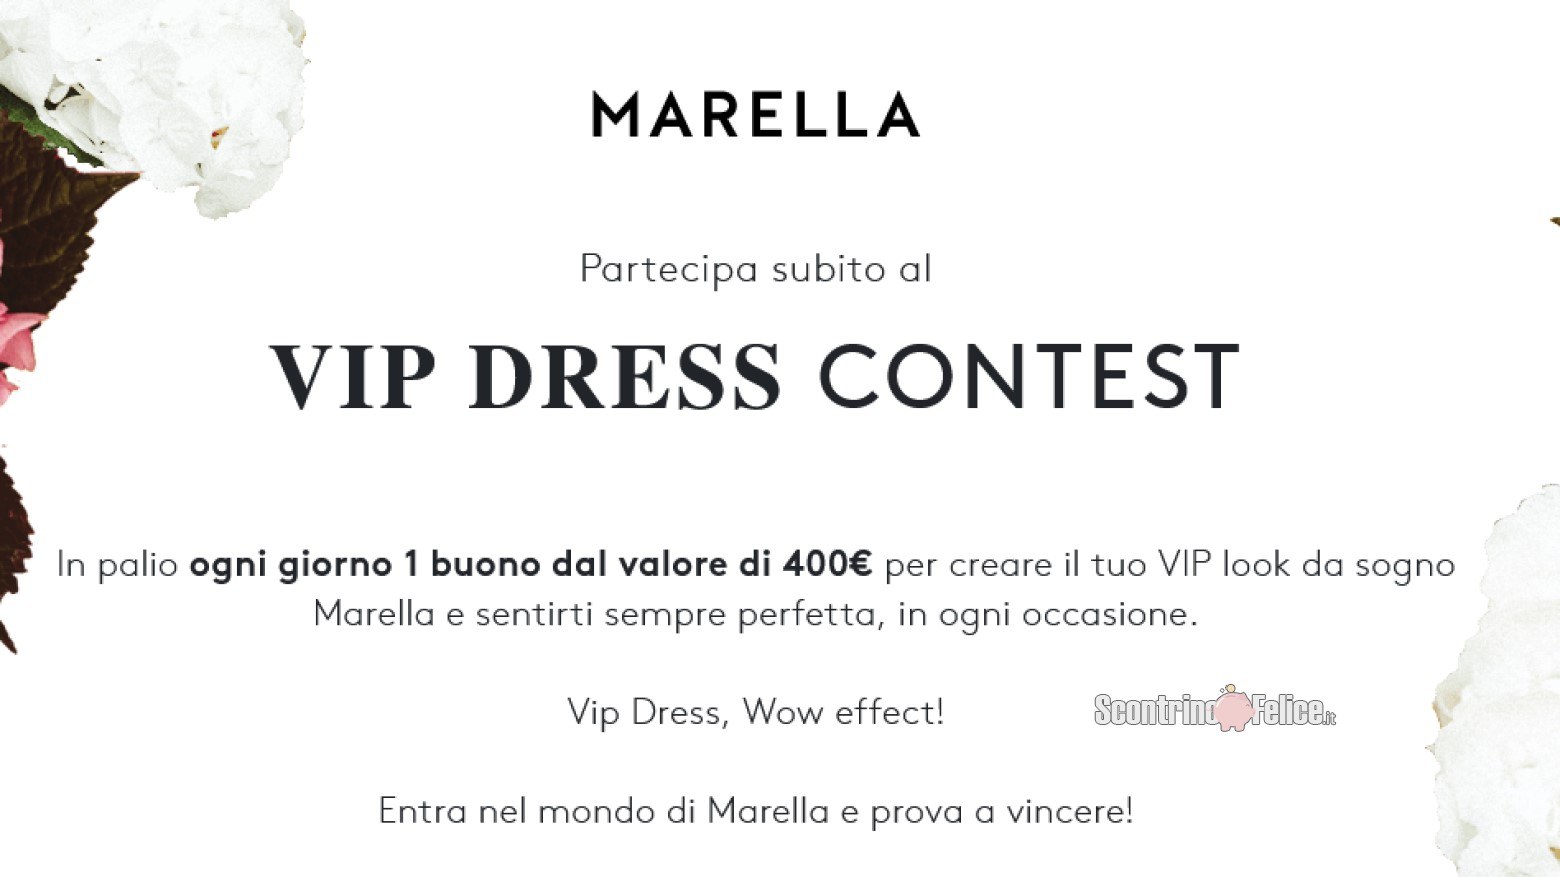 Concorso gratuito Marella “Vip Dress Contest”: vinci ogni giorno 1 buono dal valore di 400€